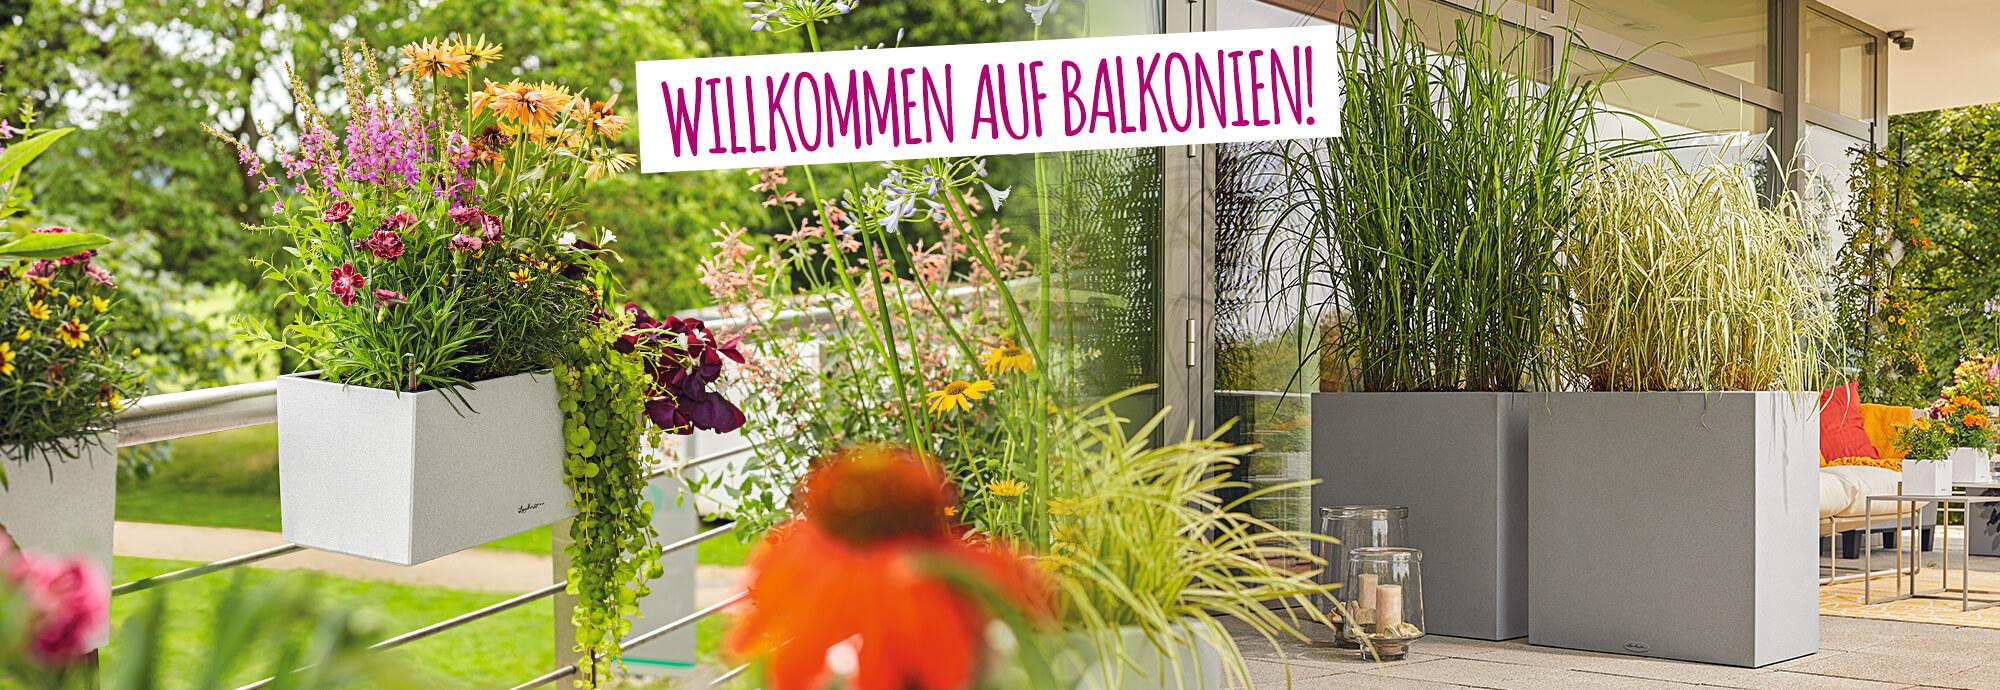 Willkommen auf Balkonien: 15% Rabatt auf Blumenkästen